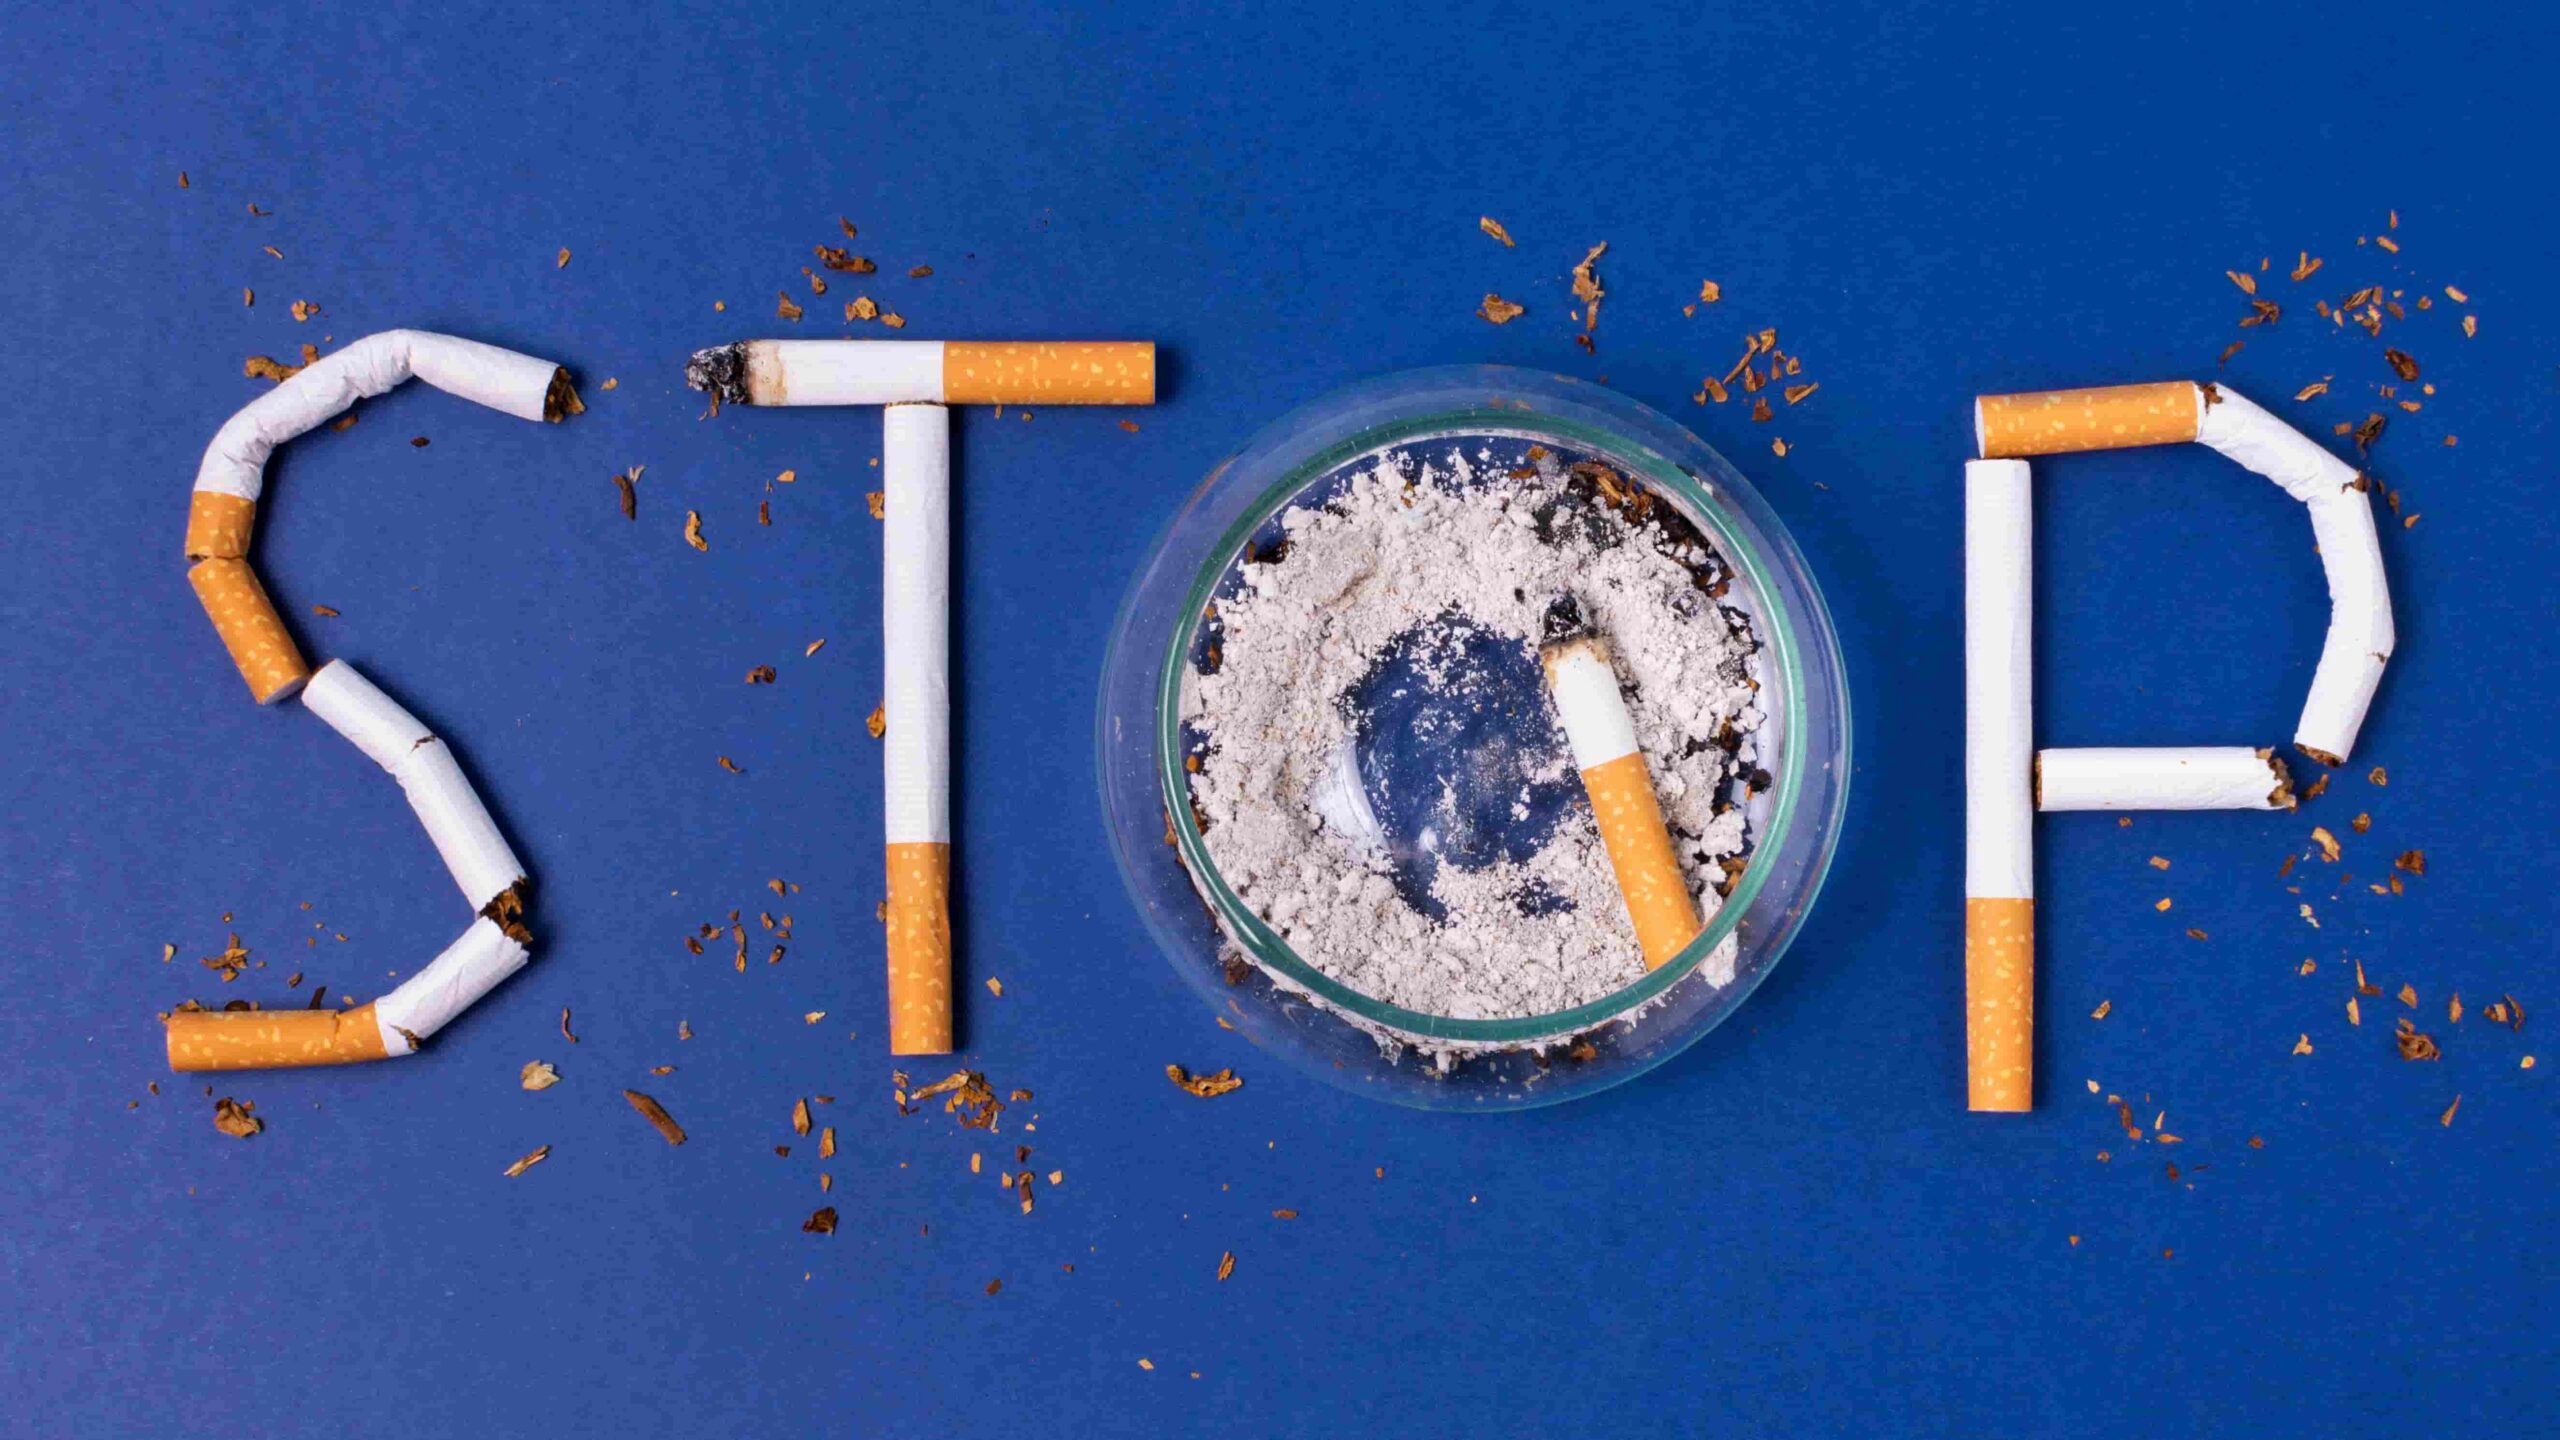 Les 5 meilleures solutions pour arrêter de fumer définitivement -  Pratico-Pratiques